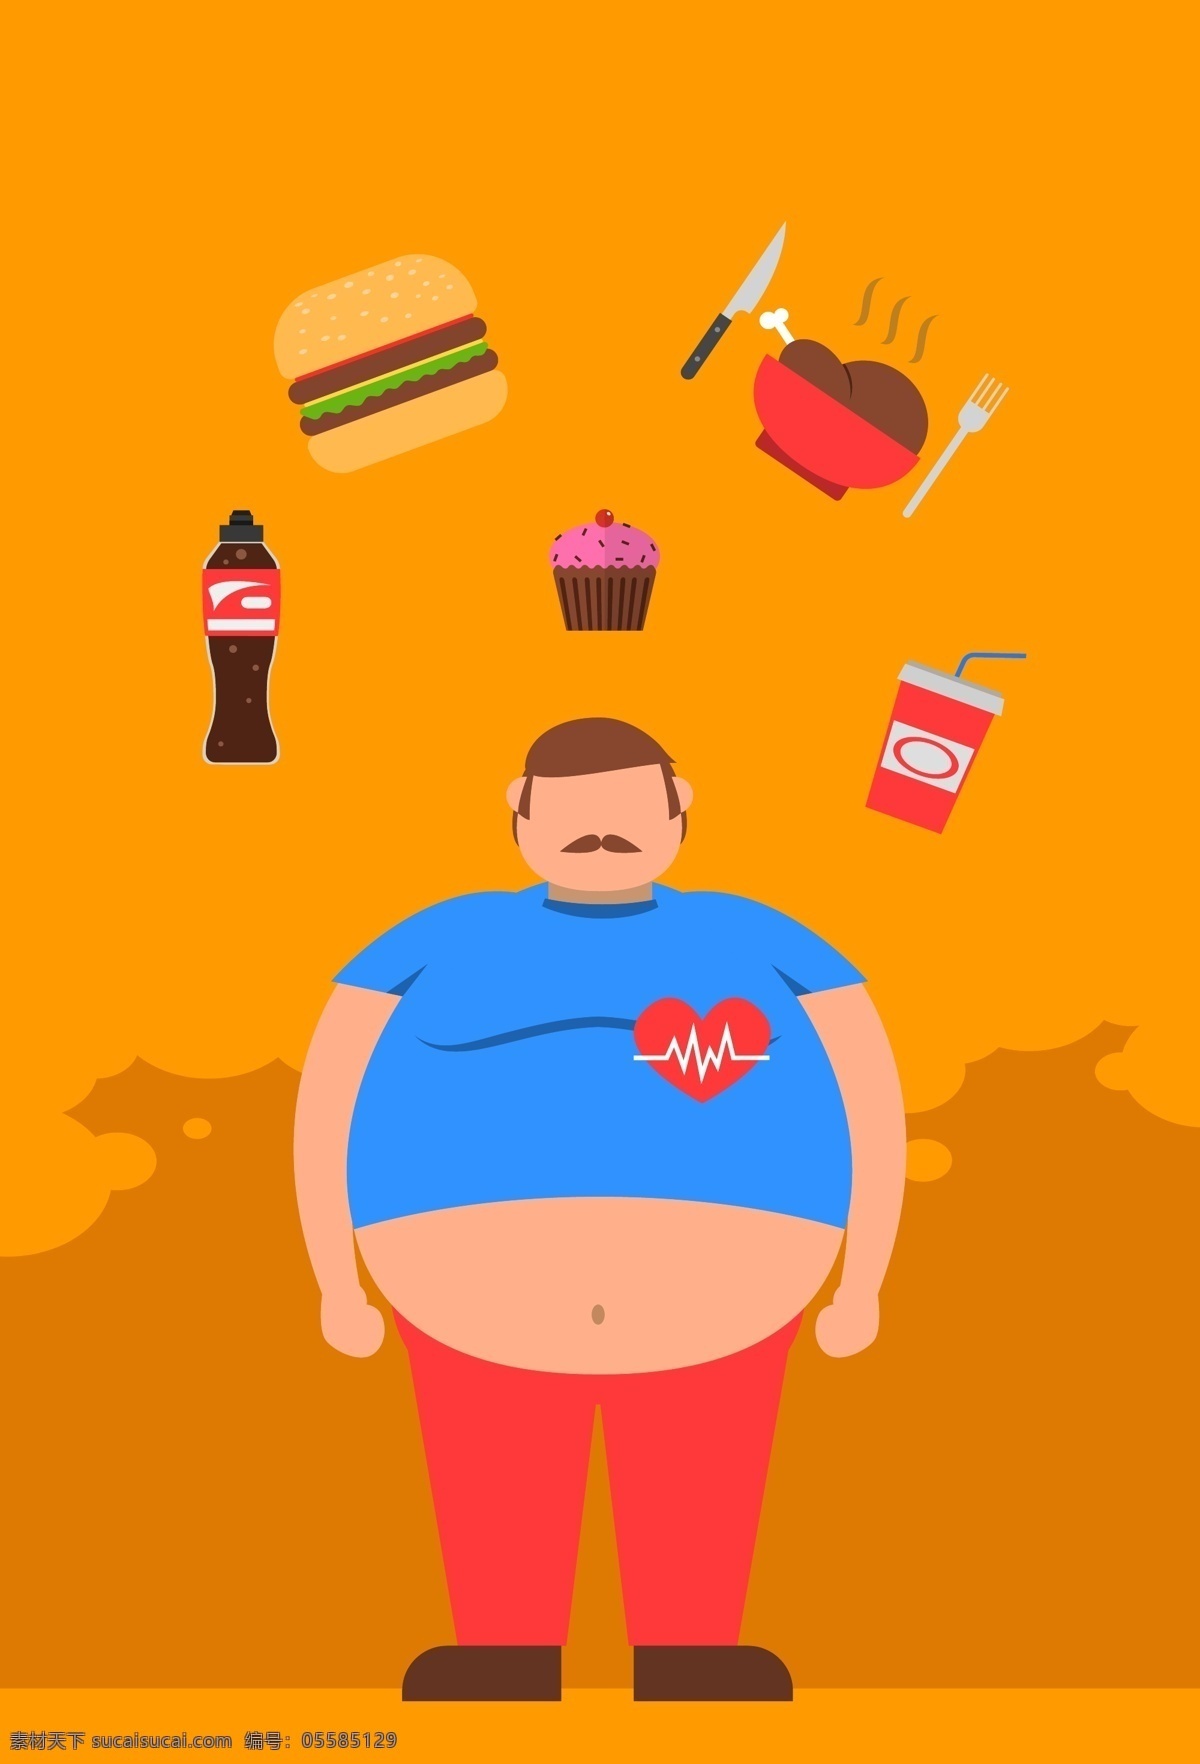 世界 防 肥胖 日 橘 色 背景 海报 矢量 扁平化 卡通 橘色底 汉堡包 甜甜圈 鸡腿